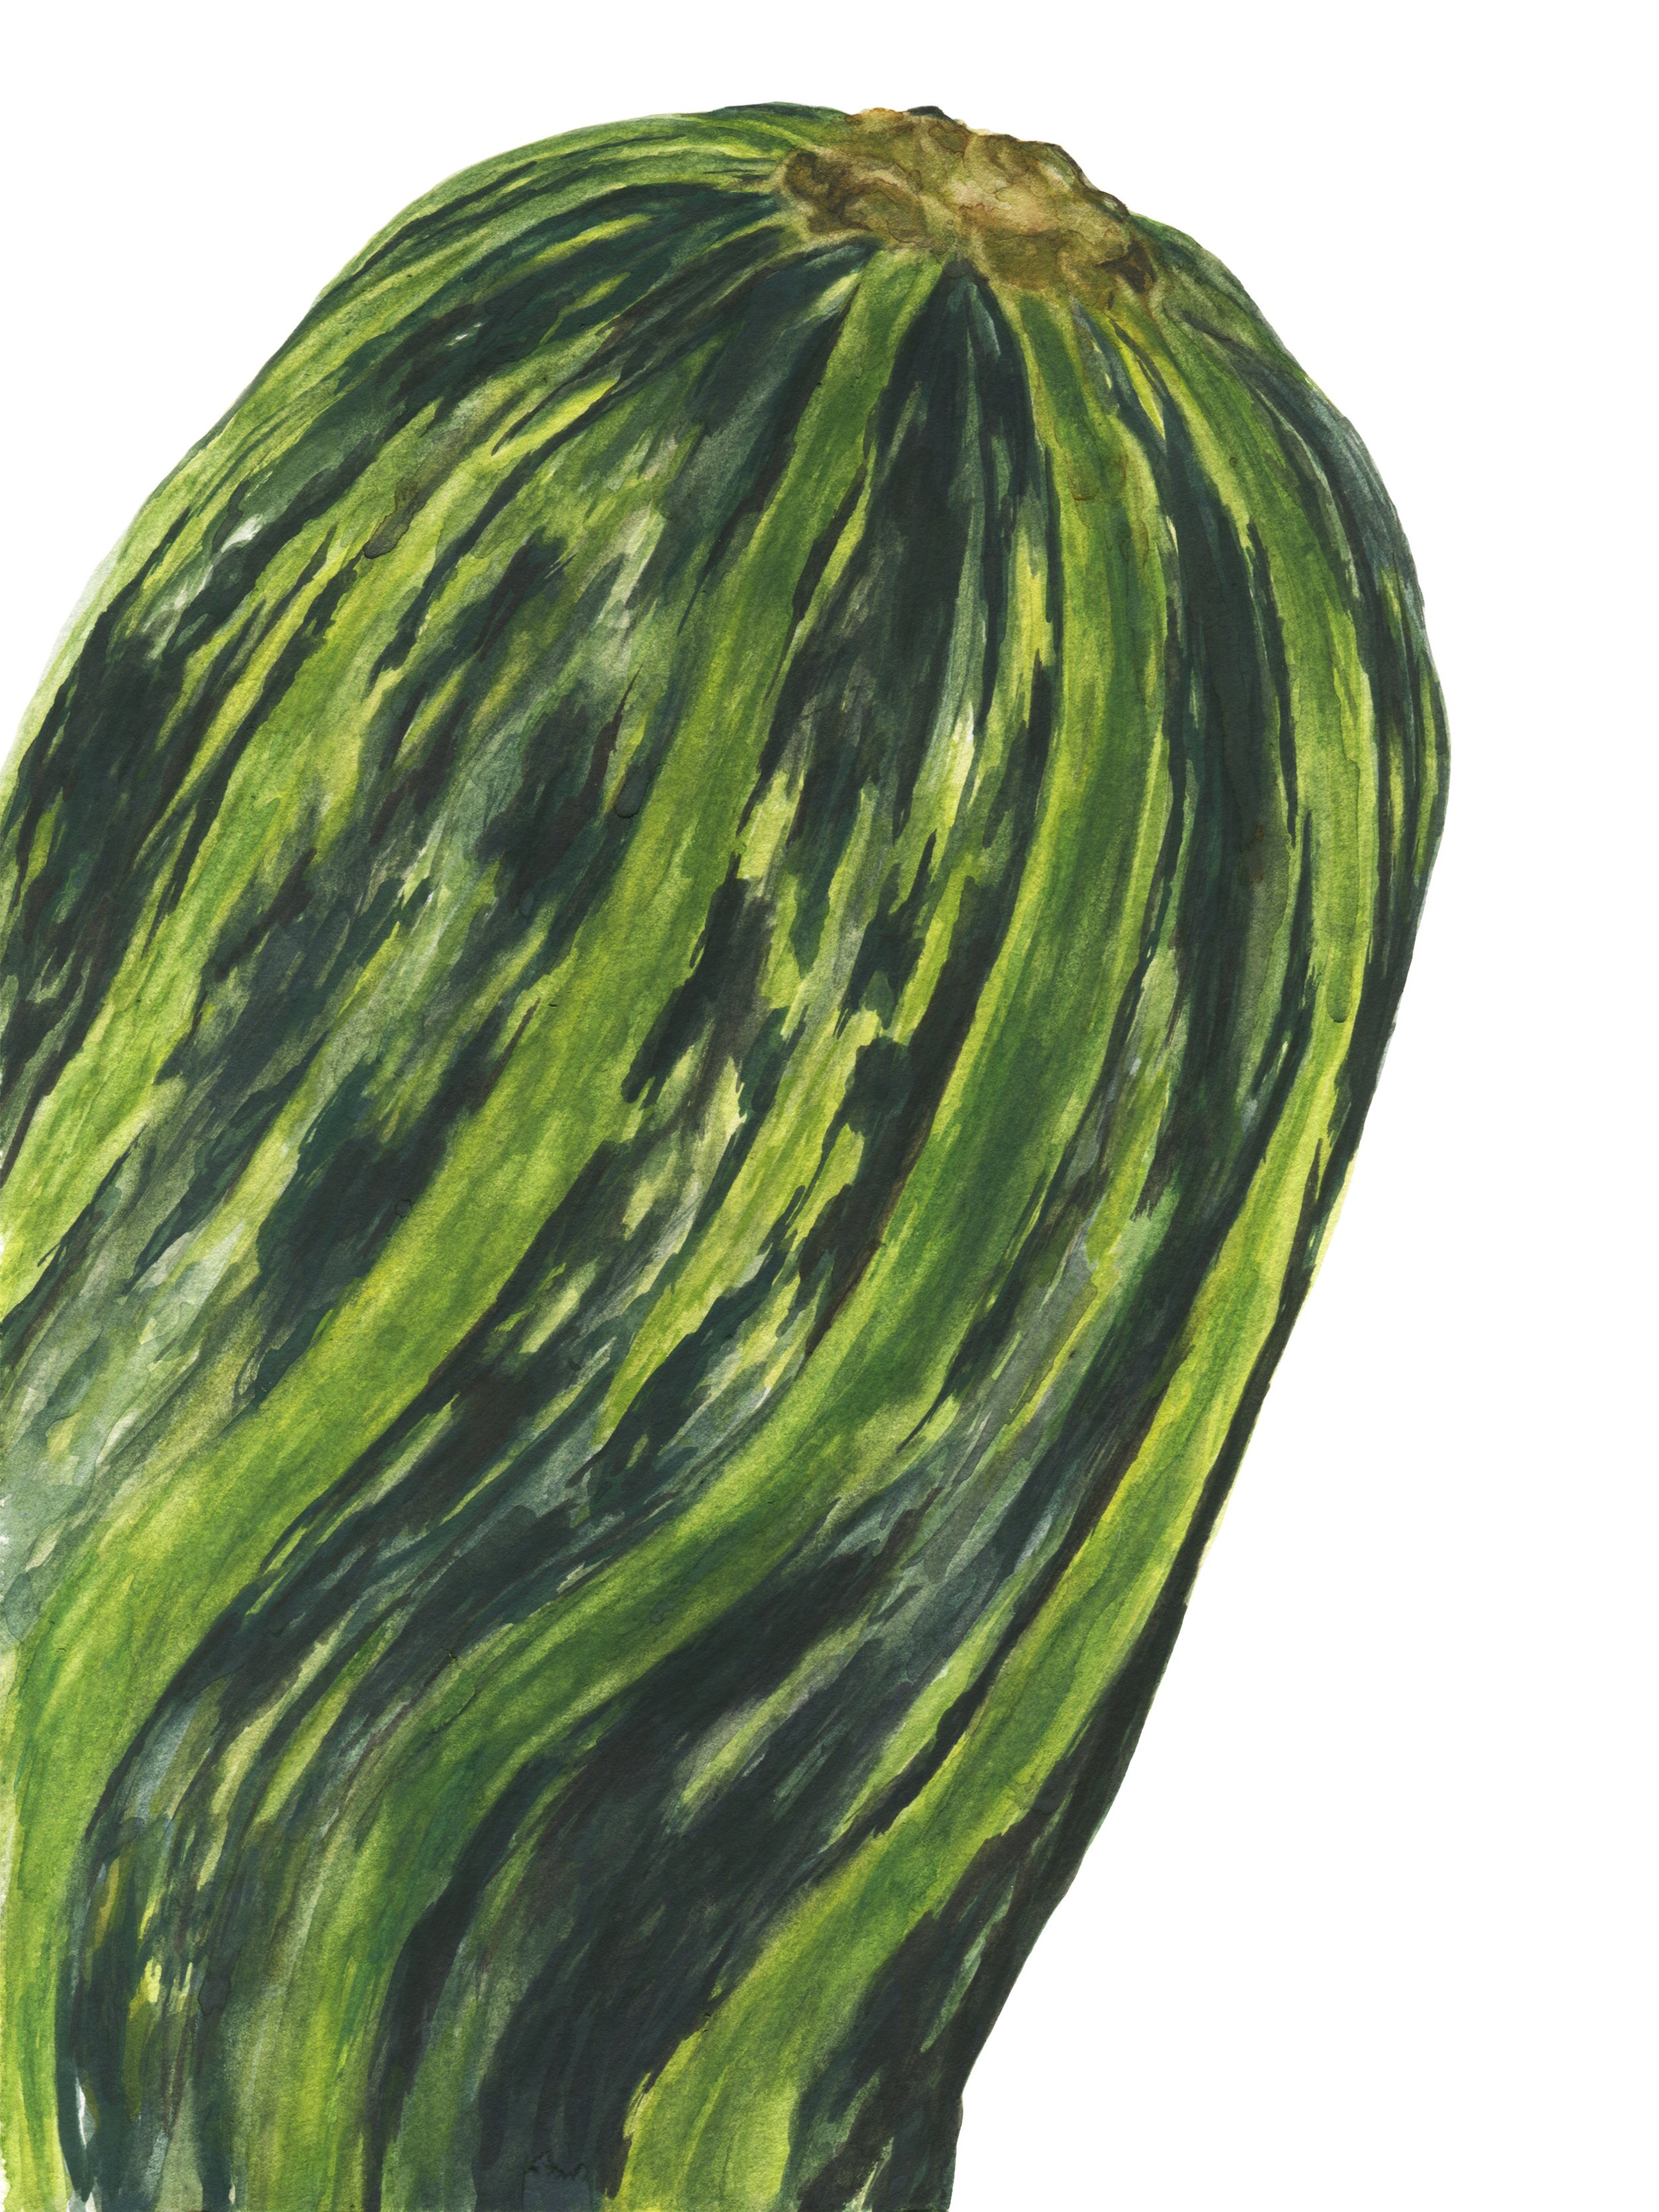 zucchini_9x12rgb.jpg